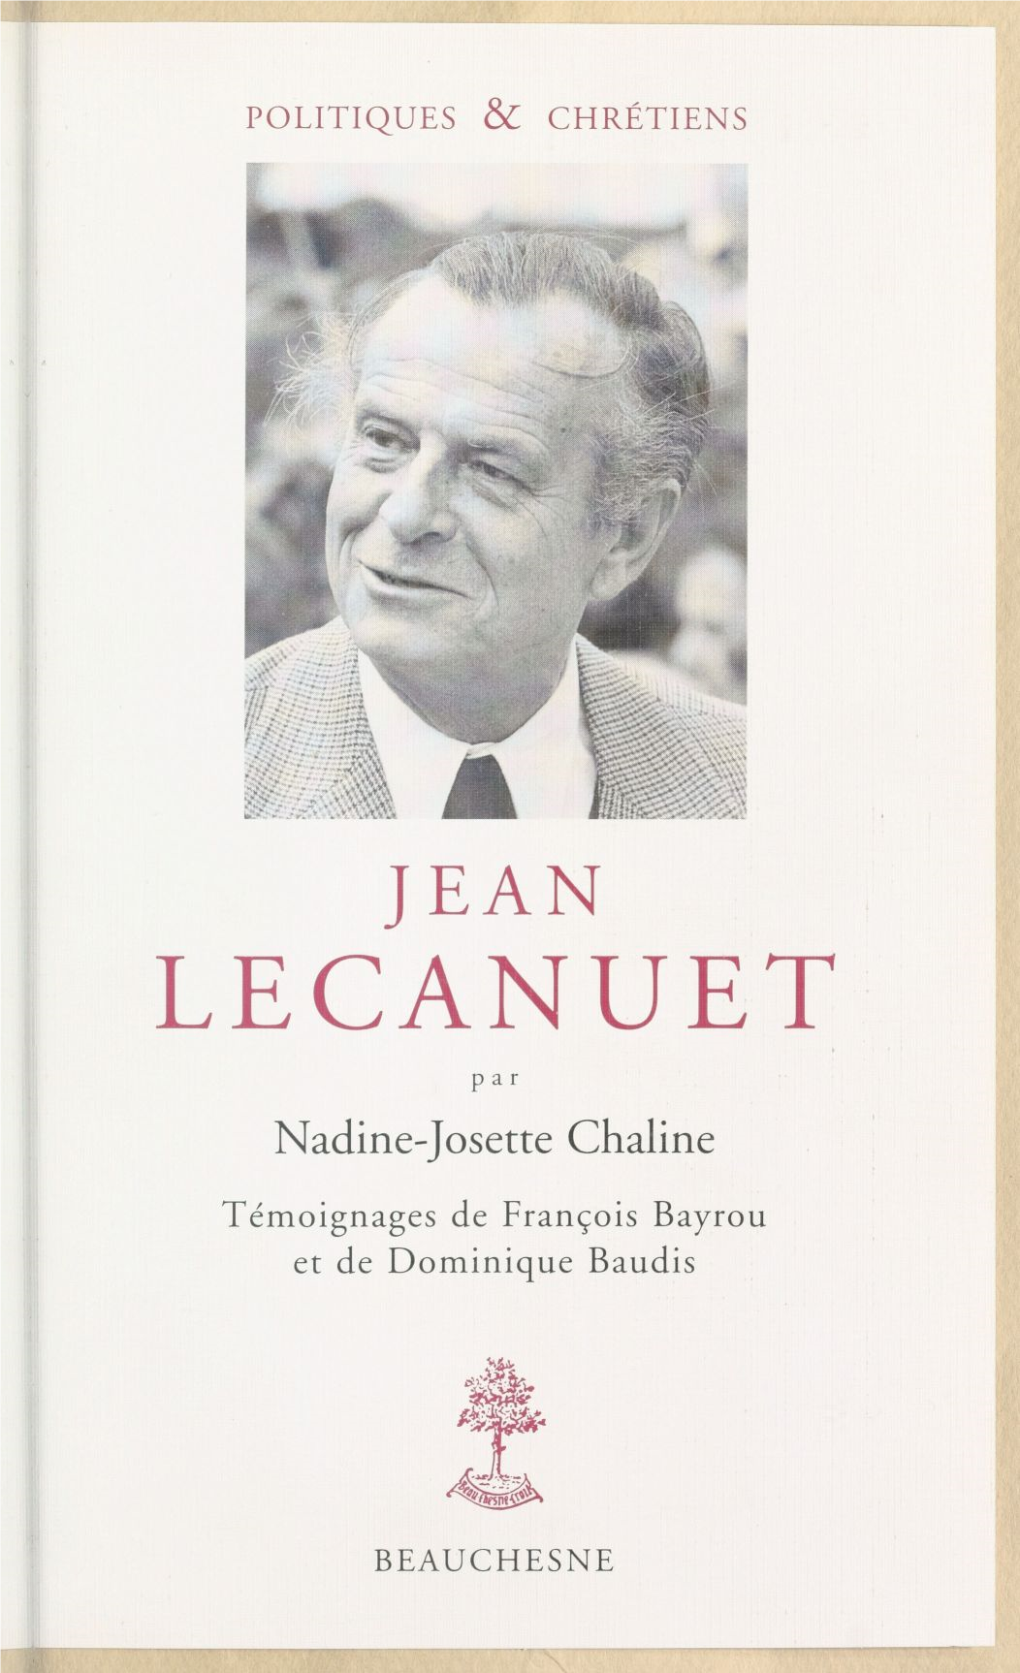 Jean Lecanuet POLITIQUES & CHRÉTIENS Collection Dirigée Par Jean-Dominique Durand Et Régis Ladous